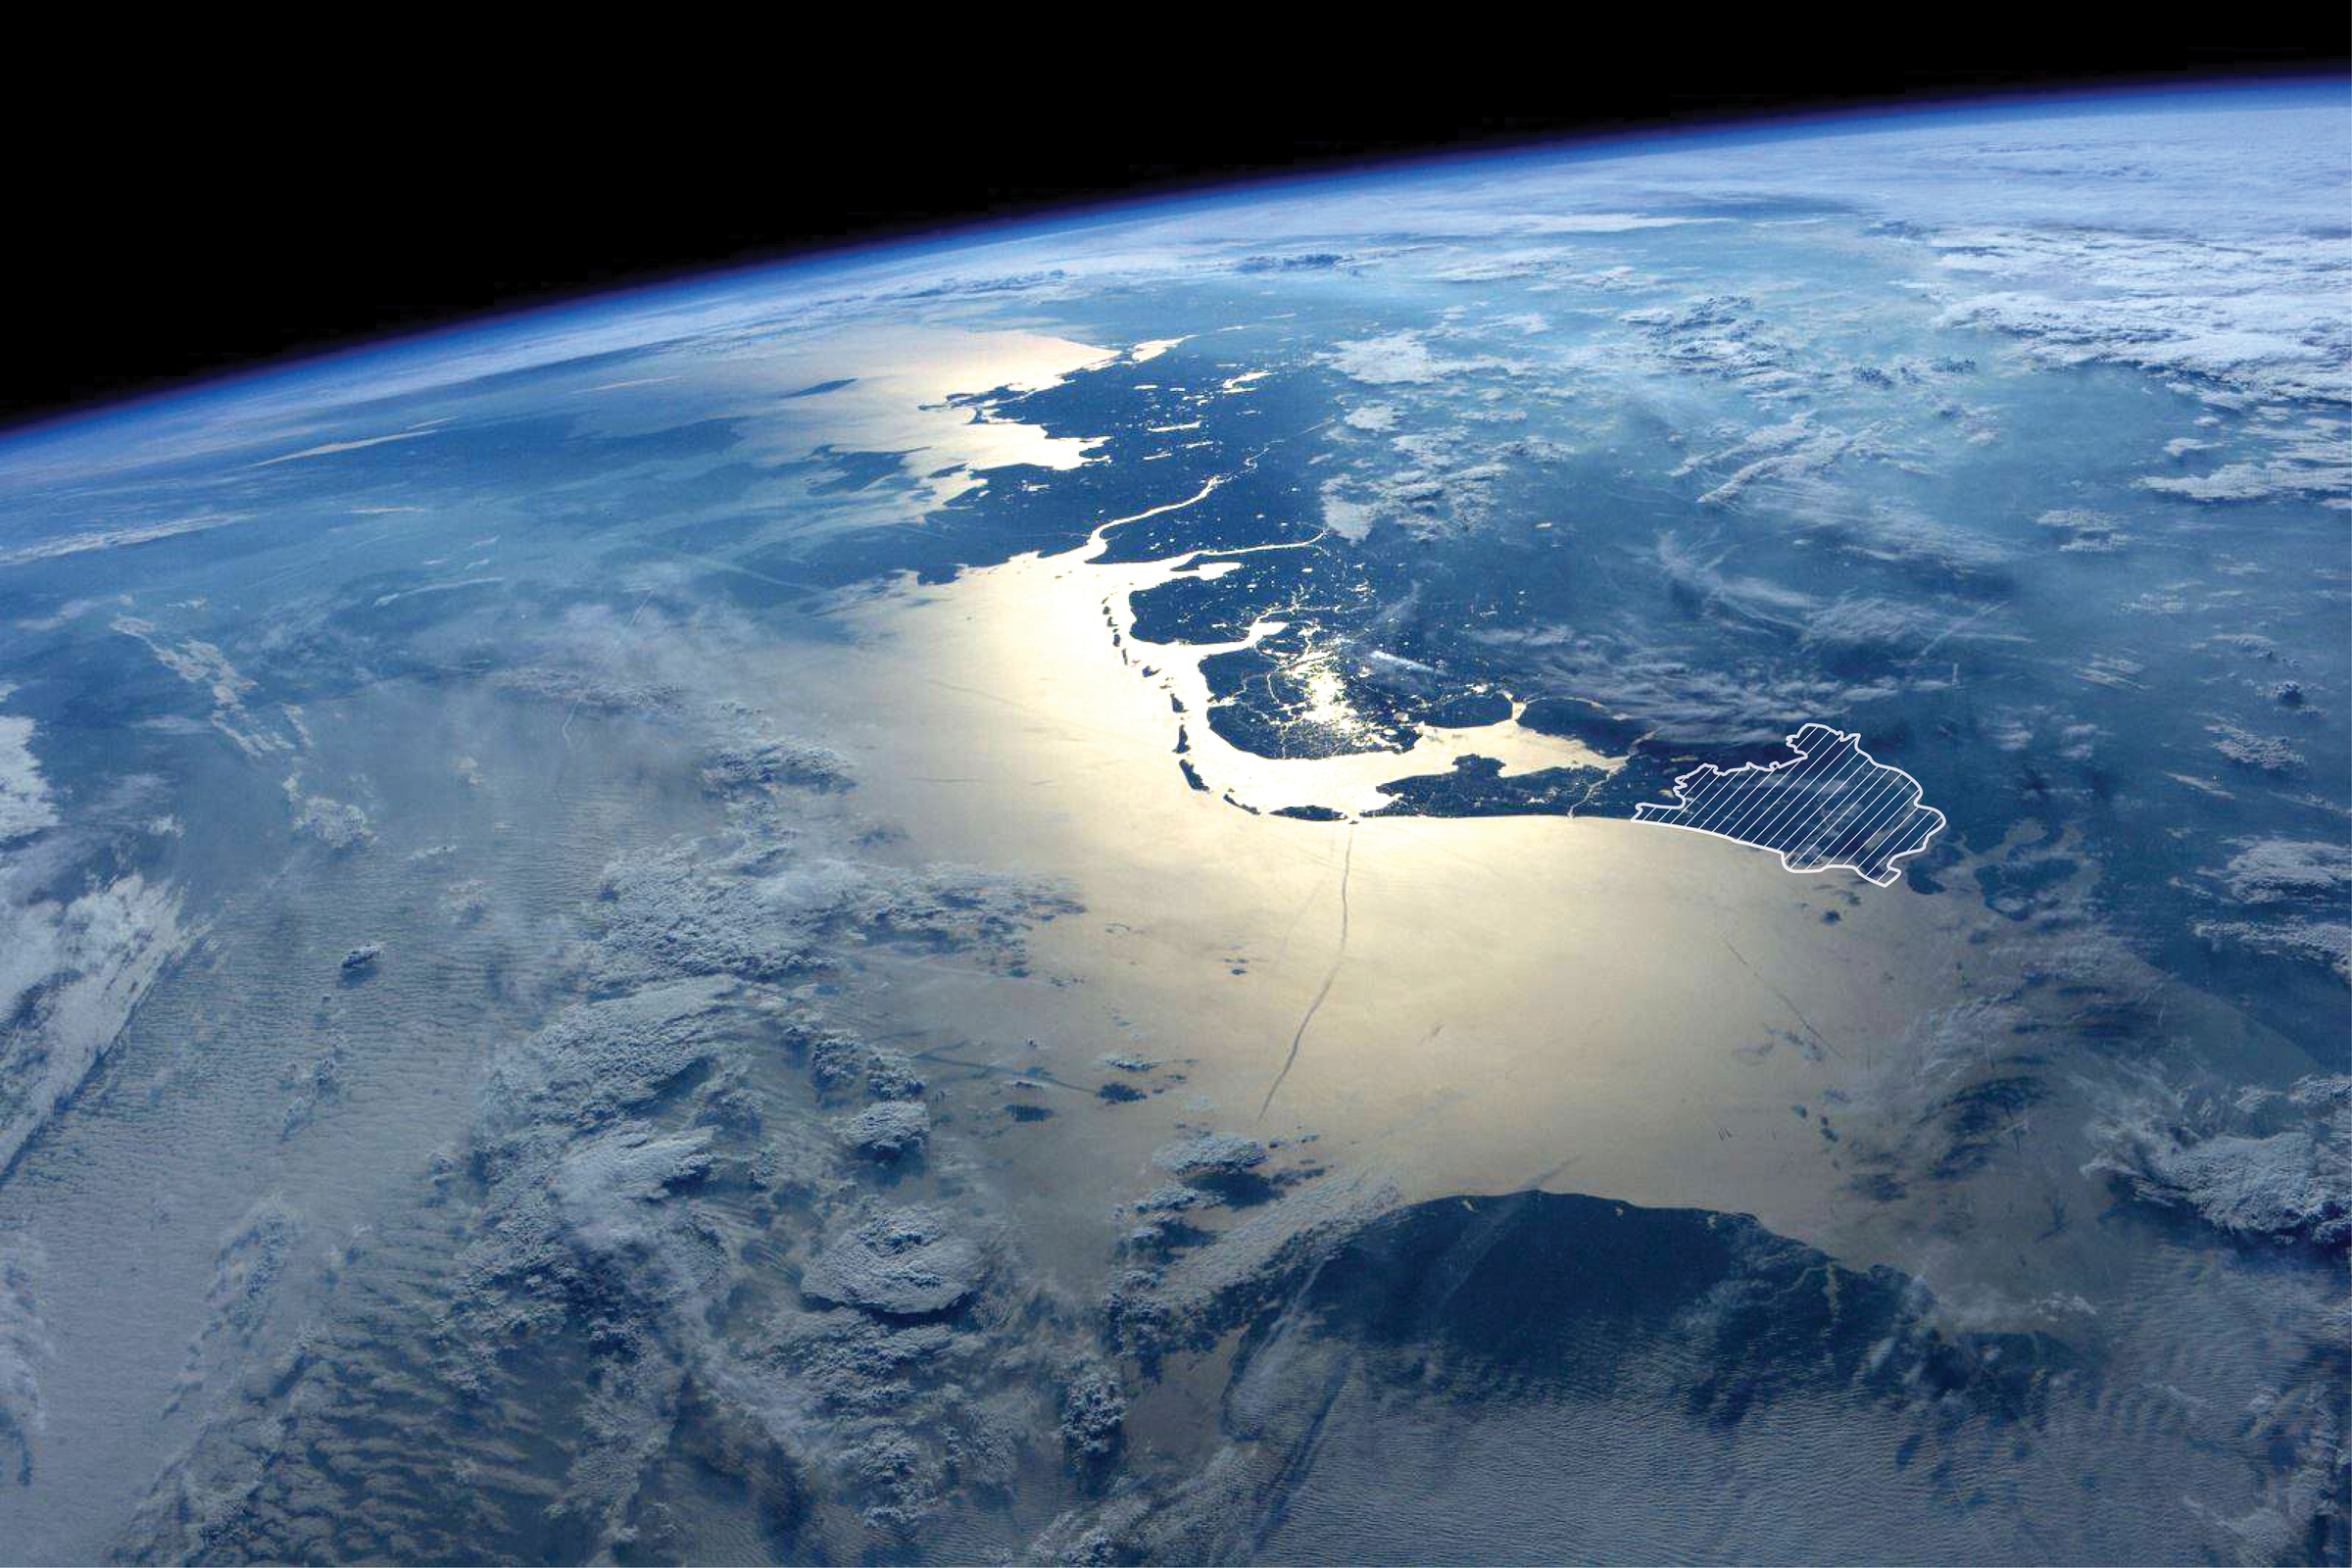 West-Europa en Nederland vanuit ruimtestation ISS. © NASA